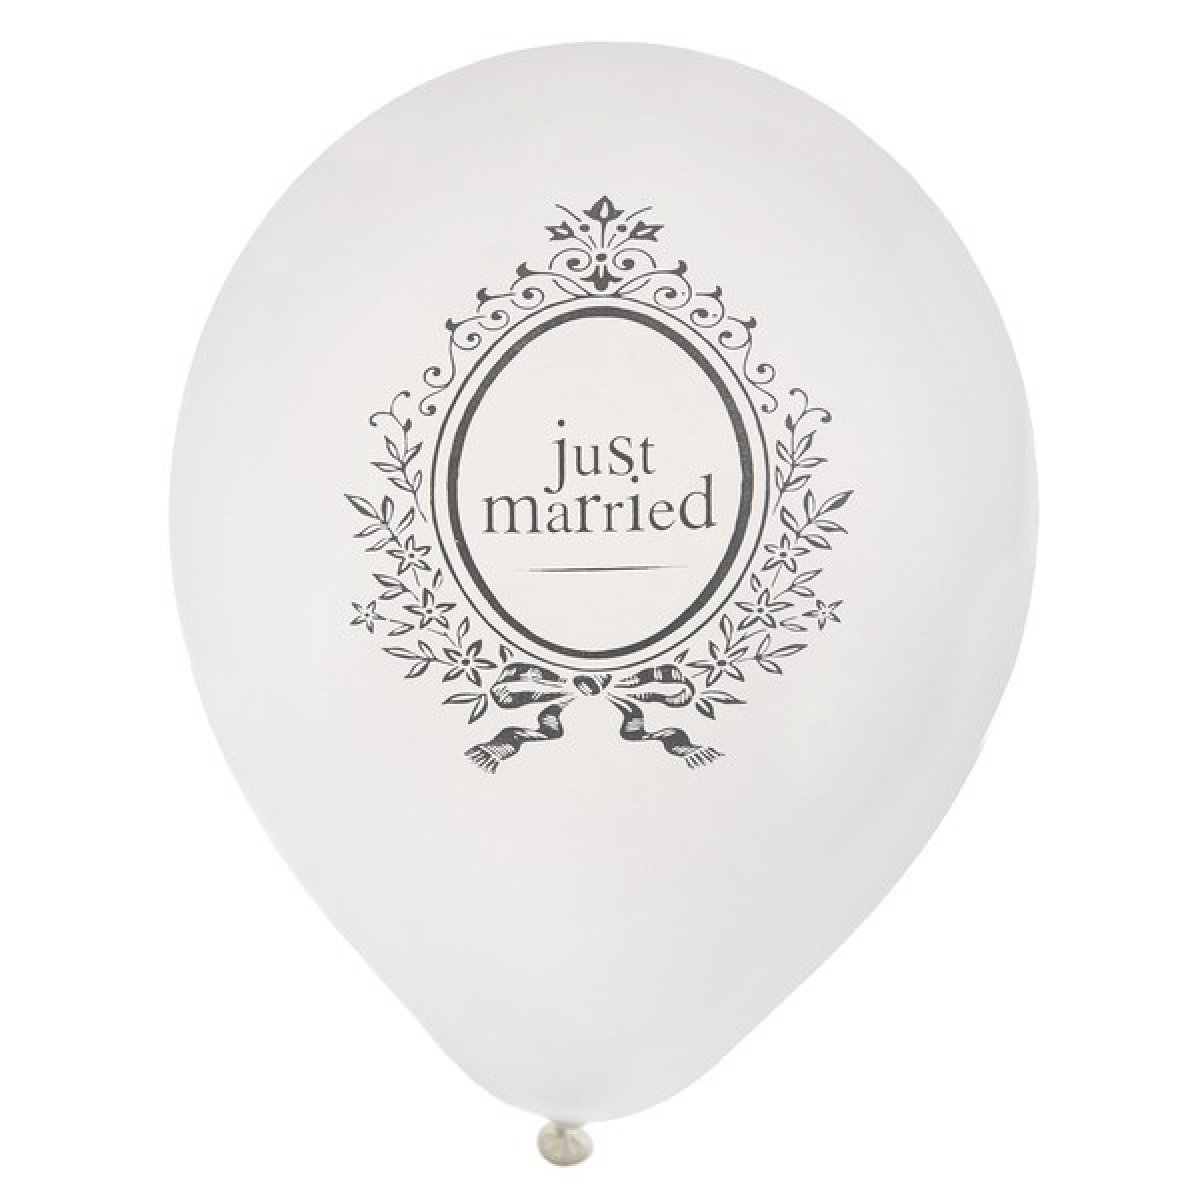 Lot de 8 ballons blanc « Just Married » 23 cm pas cher